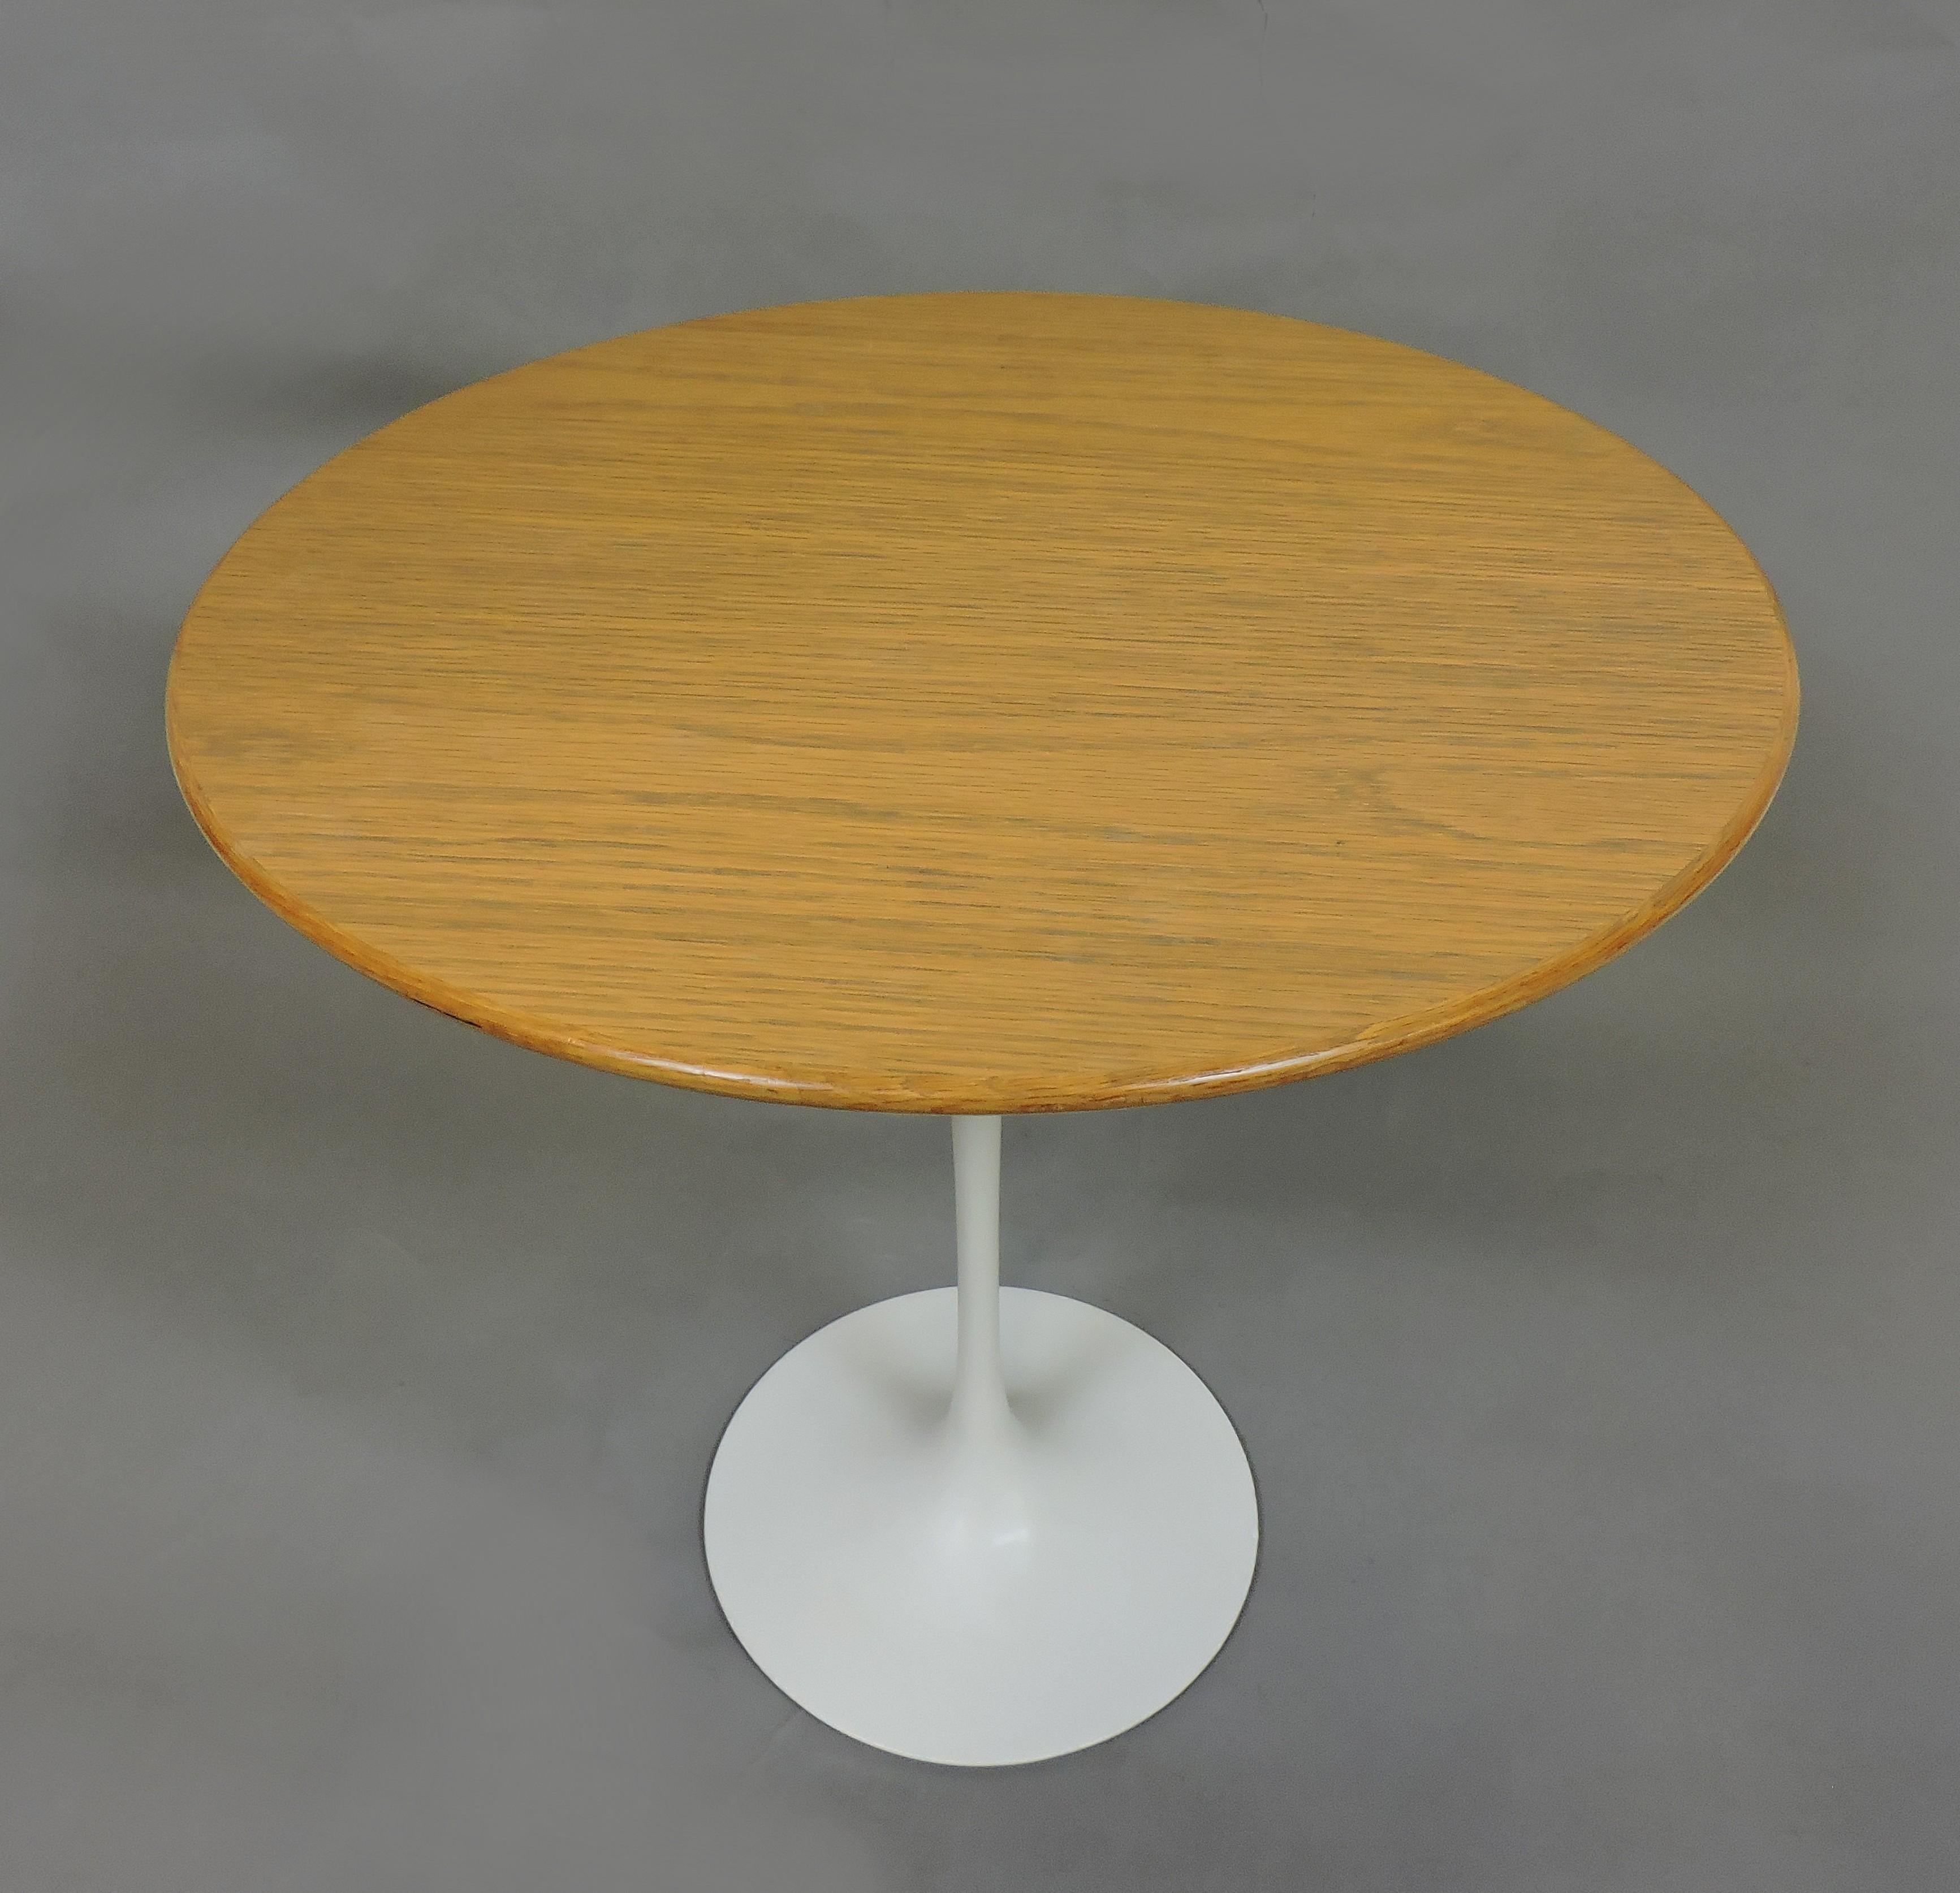 Klassischer Tulpenbeistelltisch, entworfen von Eero Saarinen und hergestellt von Knoll. Dieser Tisch hat eine Eichenplatte mit einem Durchmesser von 20 Zoll, einen weißen Sockel und wurde 1978 hergestellt. Knoll-Etikett darunter.